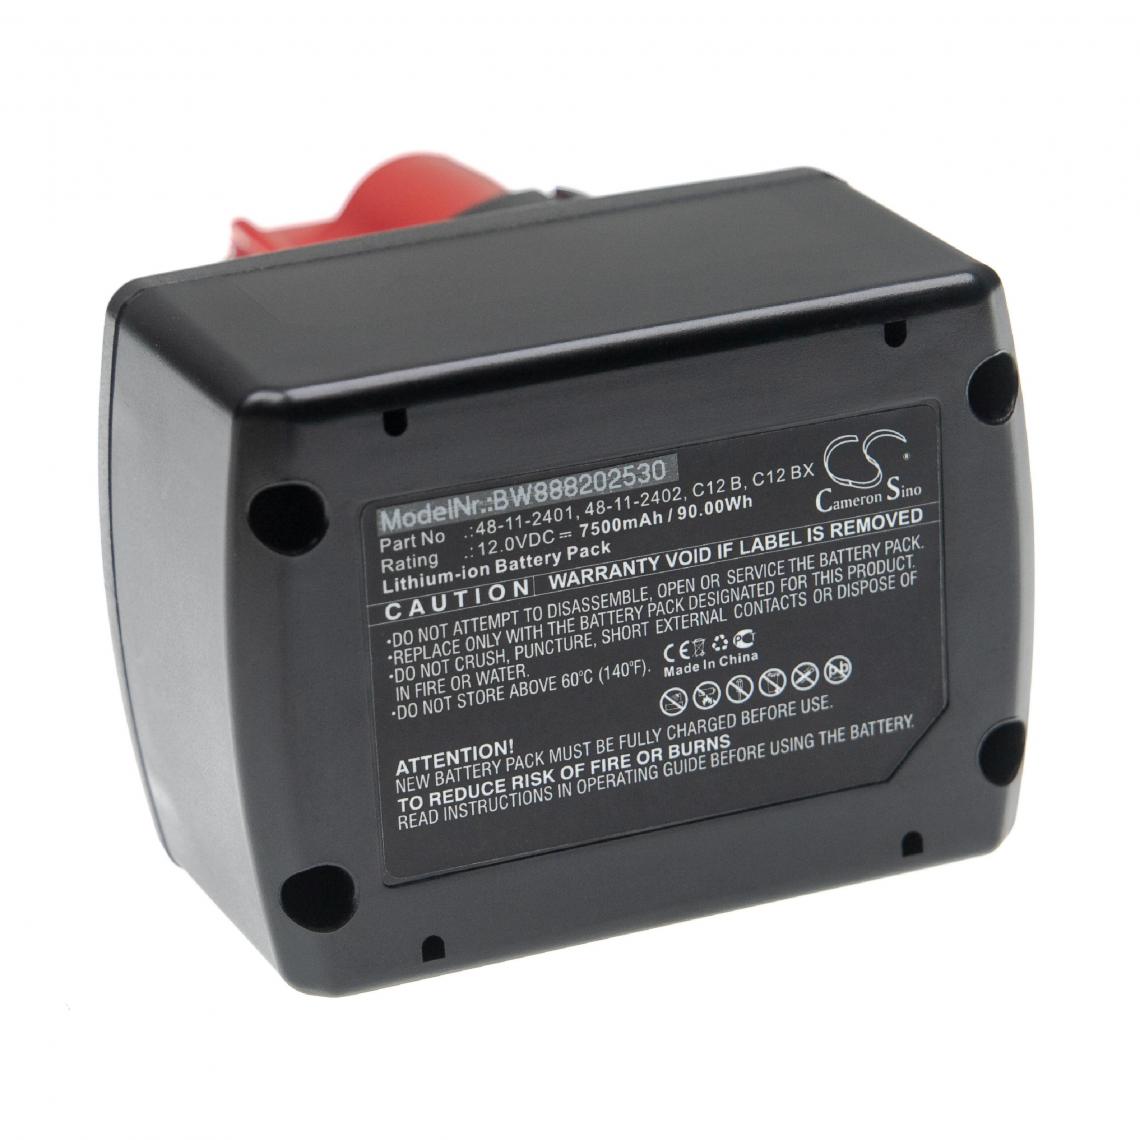 Vhbw - vhbw Batterie compatible avec Milwaukee M12 TD, M12 TD-201, M12 TI, M12 TI-201C, M12 TLED outil électrique (7500mAh Li-ion 12 V) - Clouterie